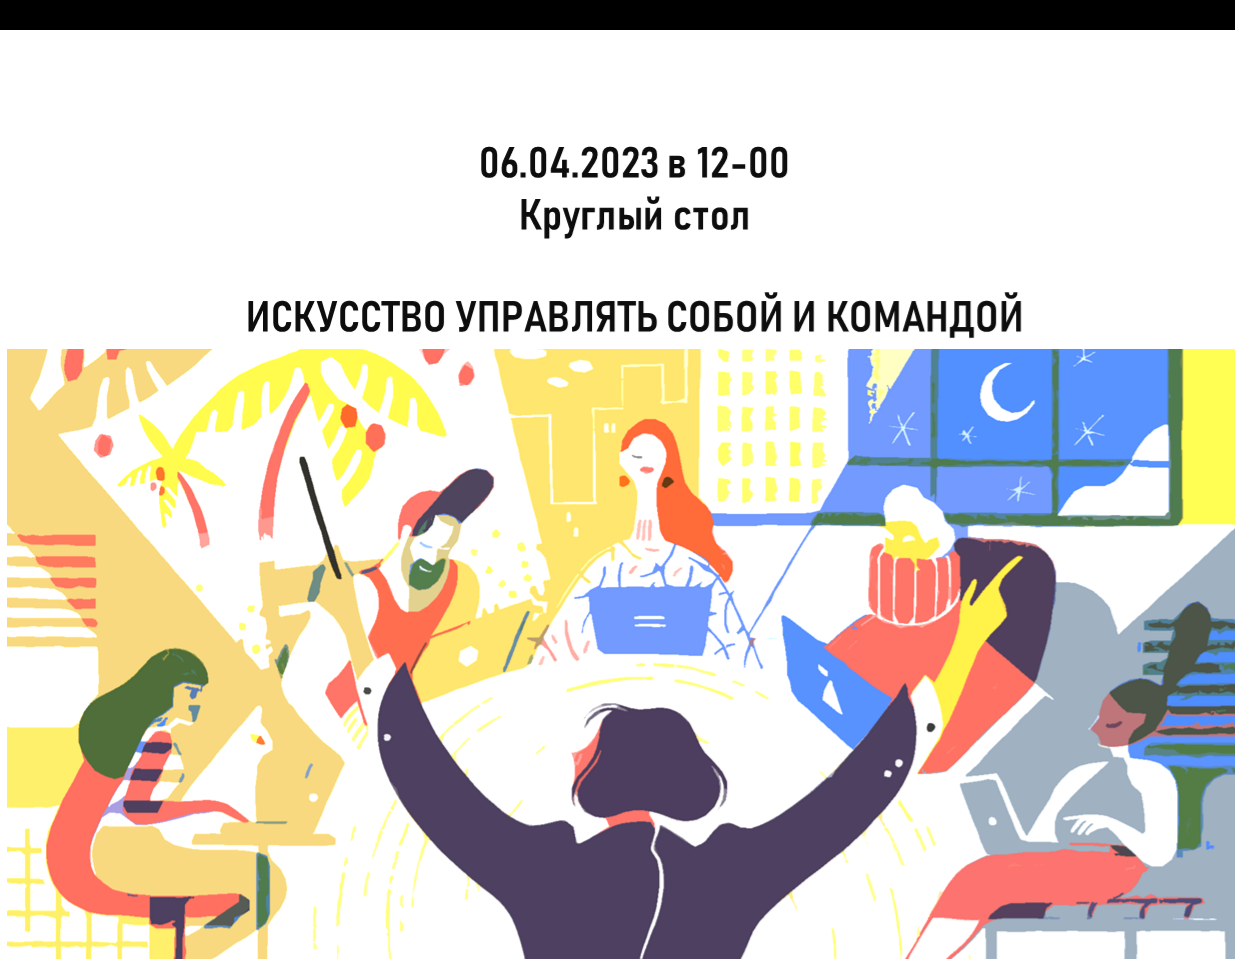 06 апреля в 12:00 во Владикавказе будет проходить круглый стол: «Искусство управлять собой и командой».